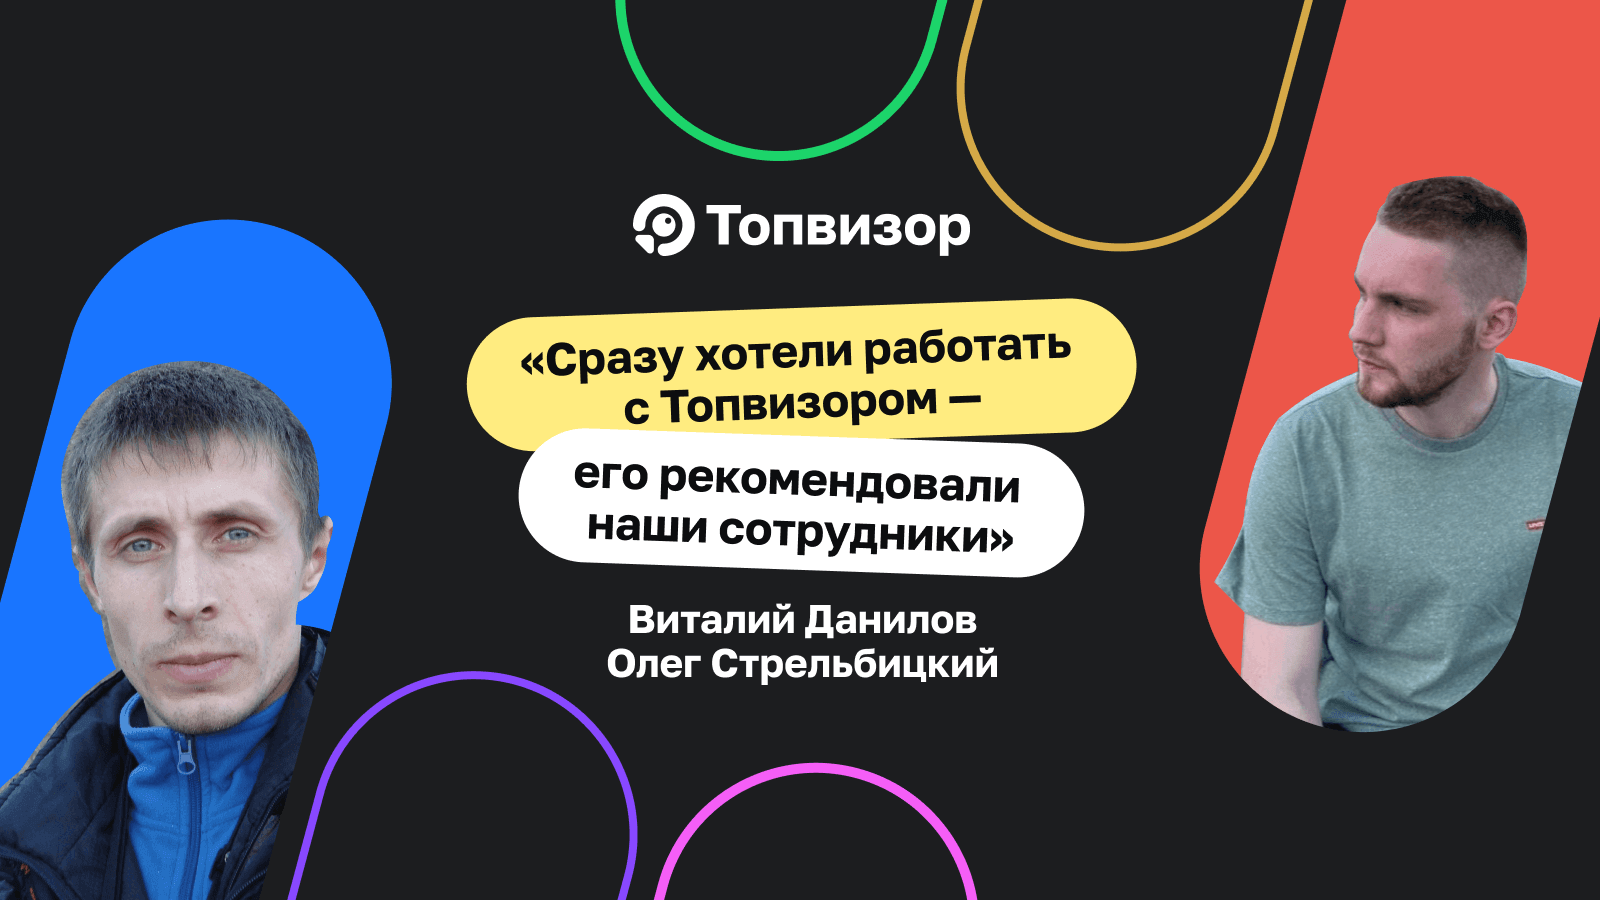 «Сразу хотели работать с Топвизором — его рекомендовали наши сотрудники». Как в агентстве INFORM-S искали съёмщик позиций после упразднения Яндекс XML